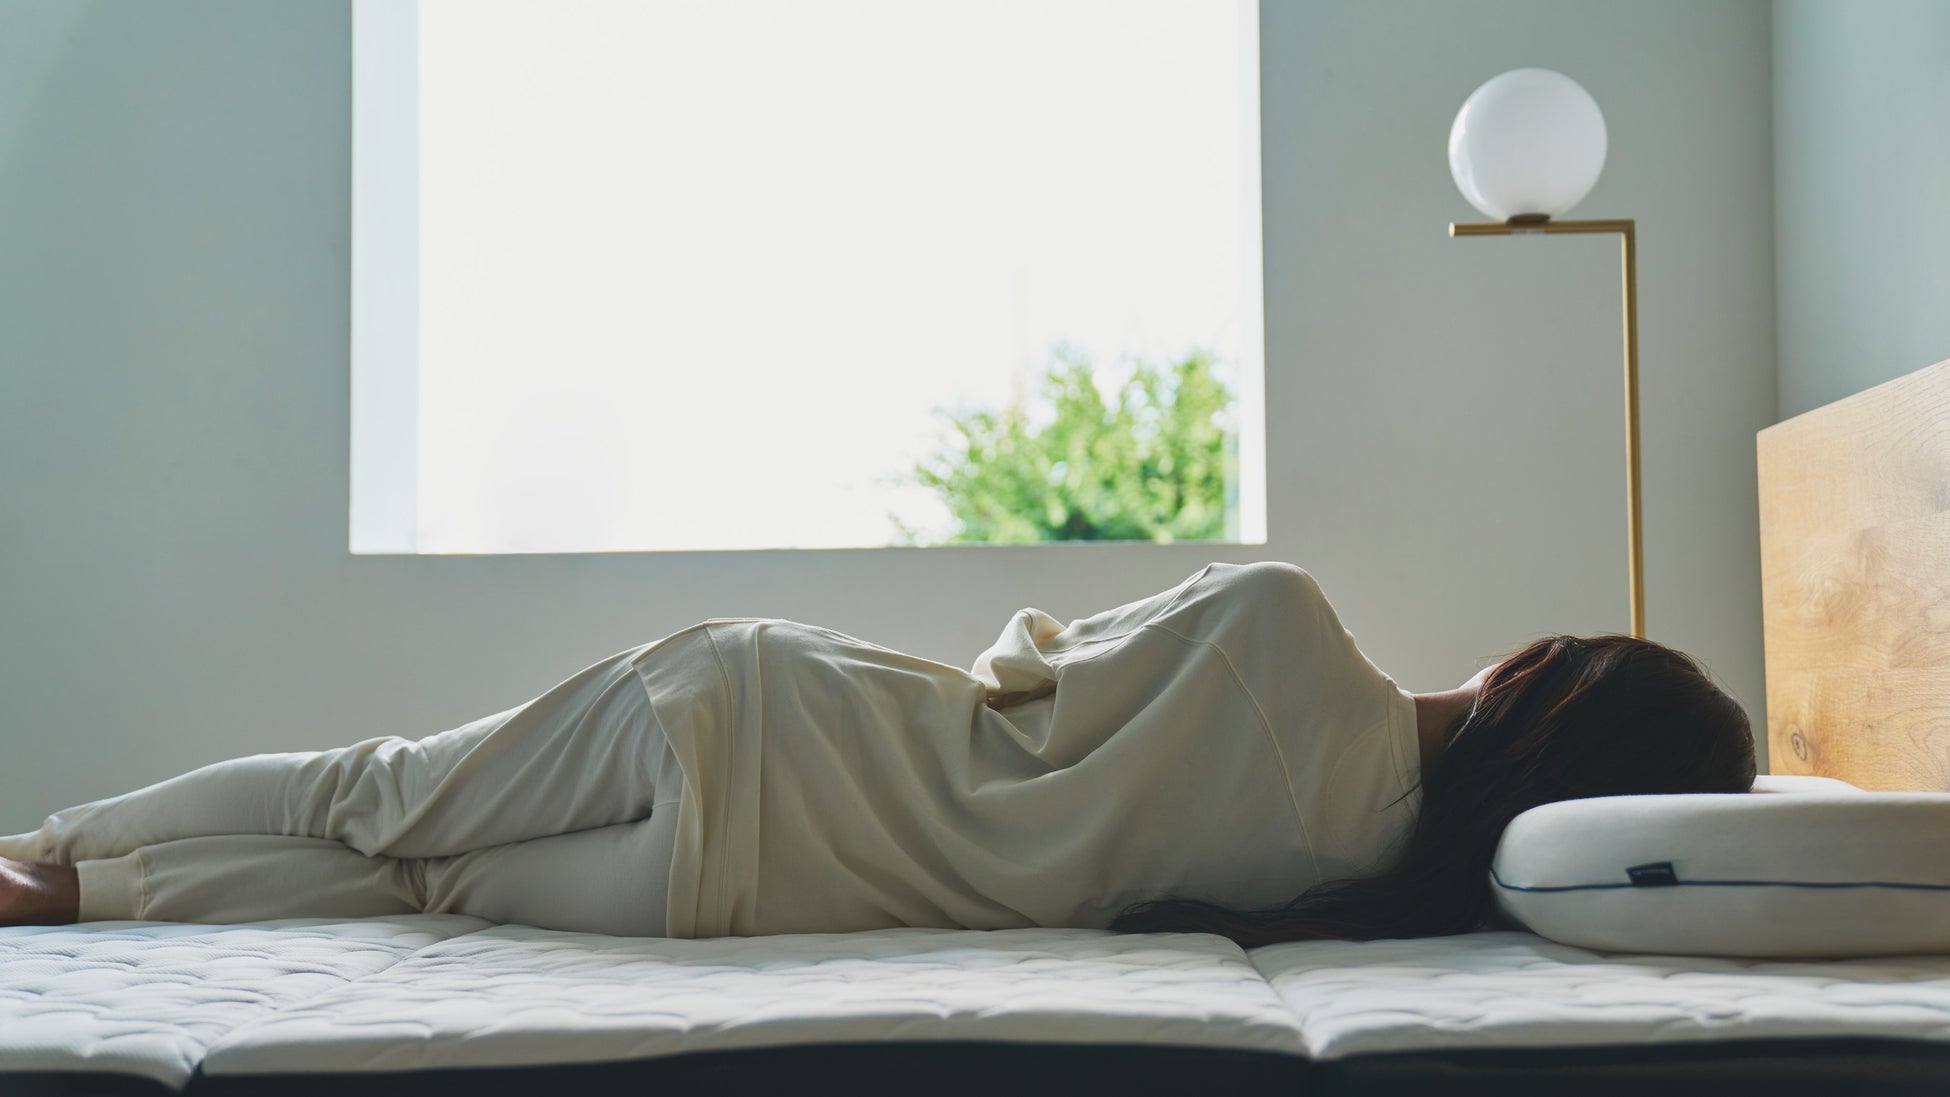 札幌プリンスホテルでBAKUNEコラボレーションルームを実施。『Sleep & Recovery』プランを5月31日まで販売